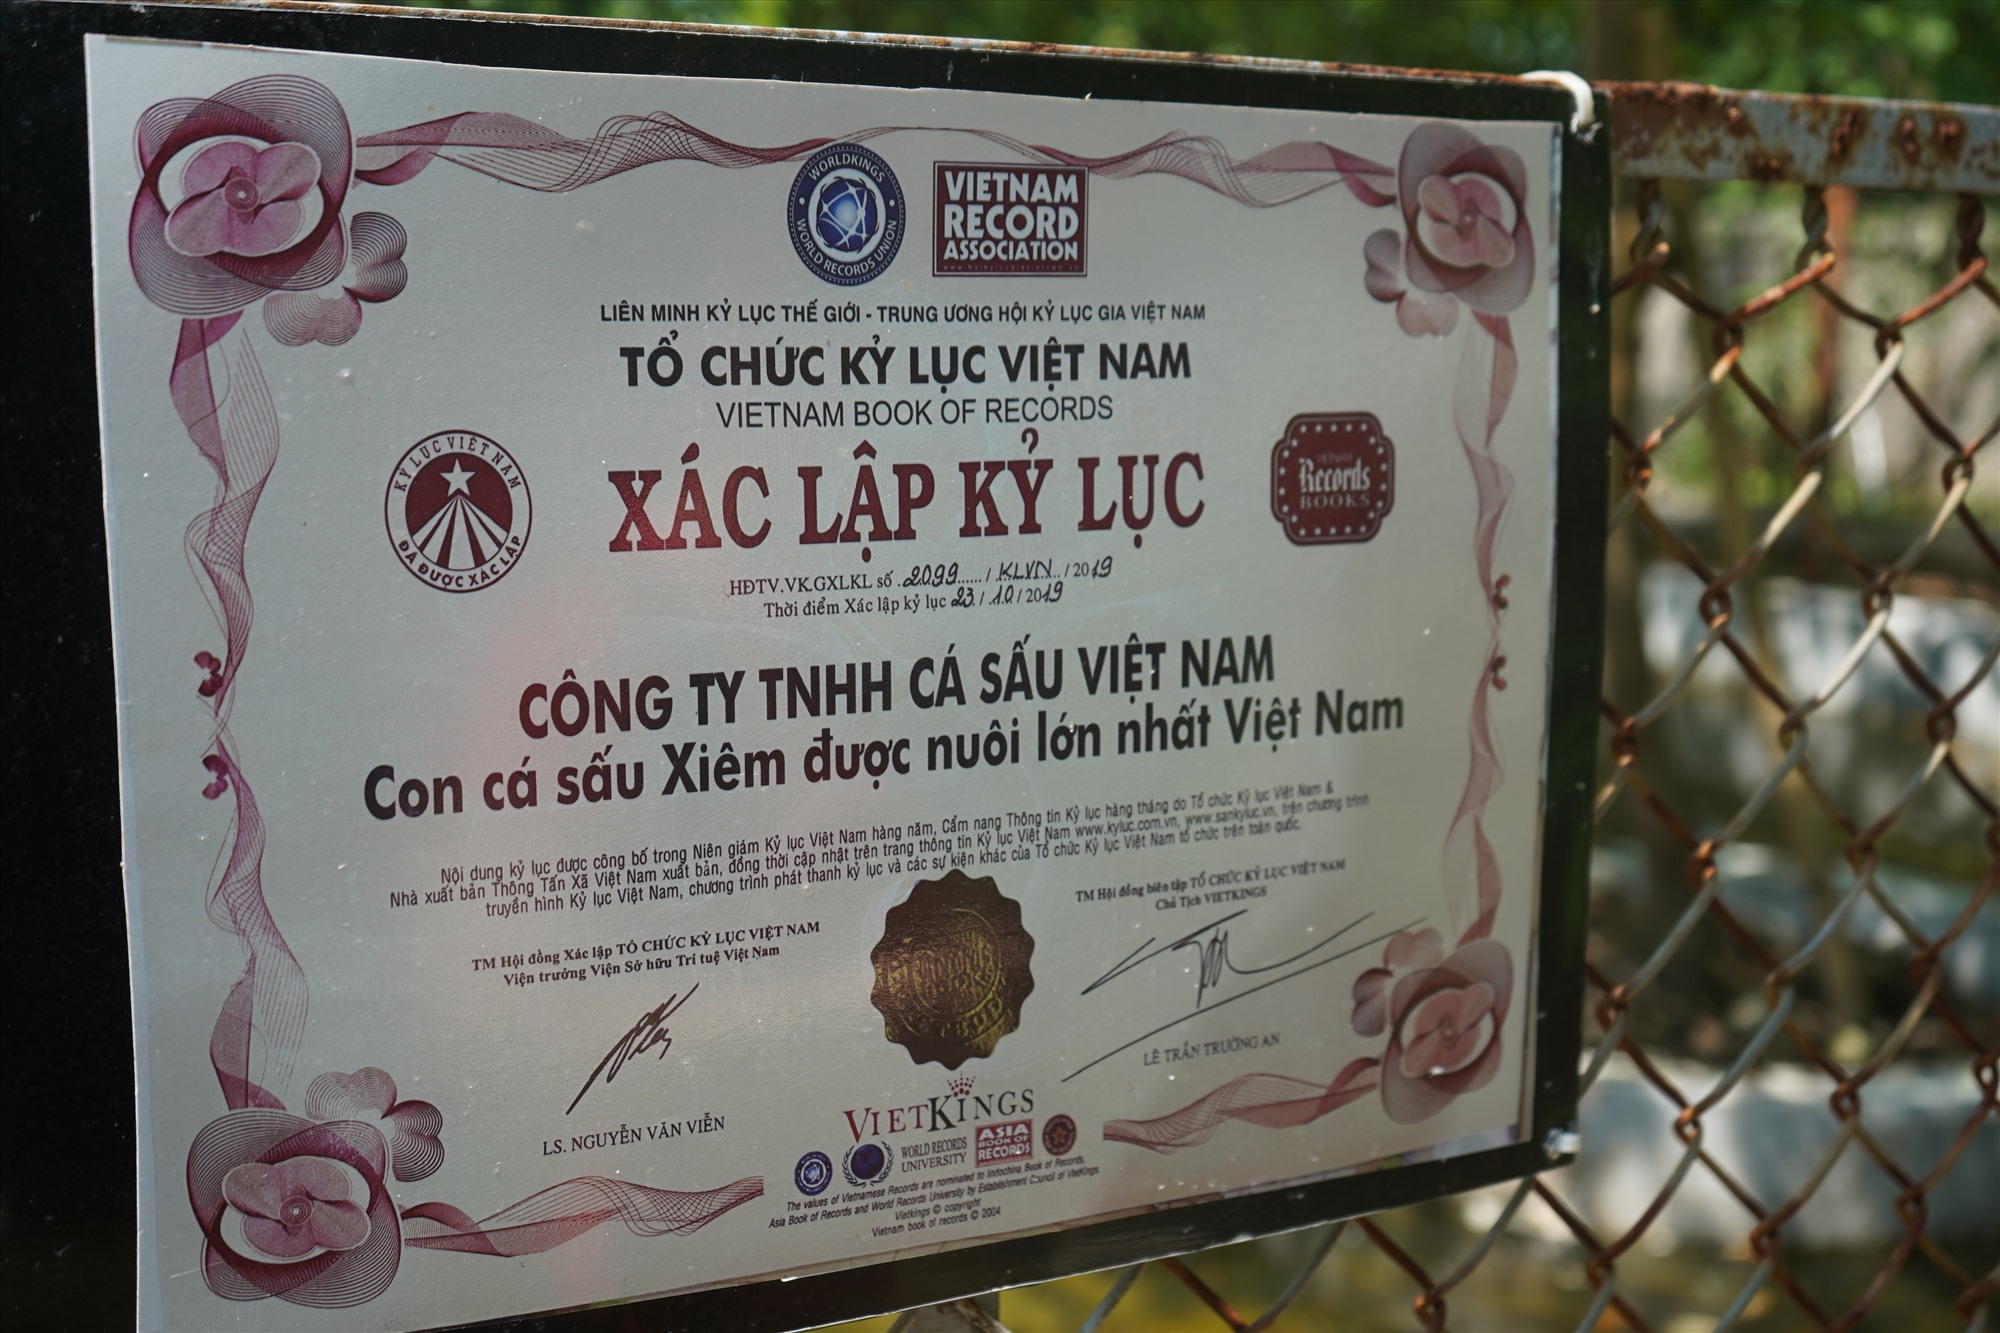 Năm 2019, cá sấu vua khi ấy nặng hơn 400kg, dài 4,1 mét được Tổ chức Kỷ lục Việt Nam trao bằng xác lập kỷ lục “Con cá sấu Xiêm được nuôi lớn nhất Việt Nam”. 